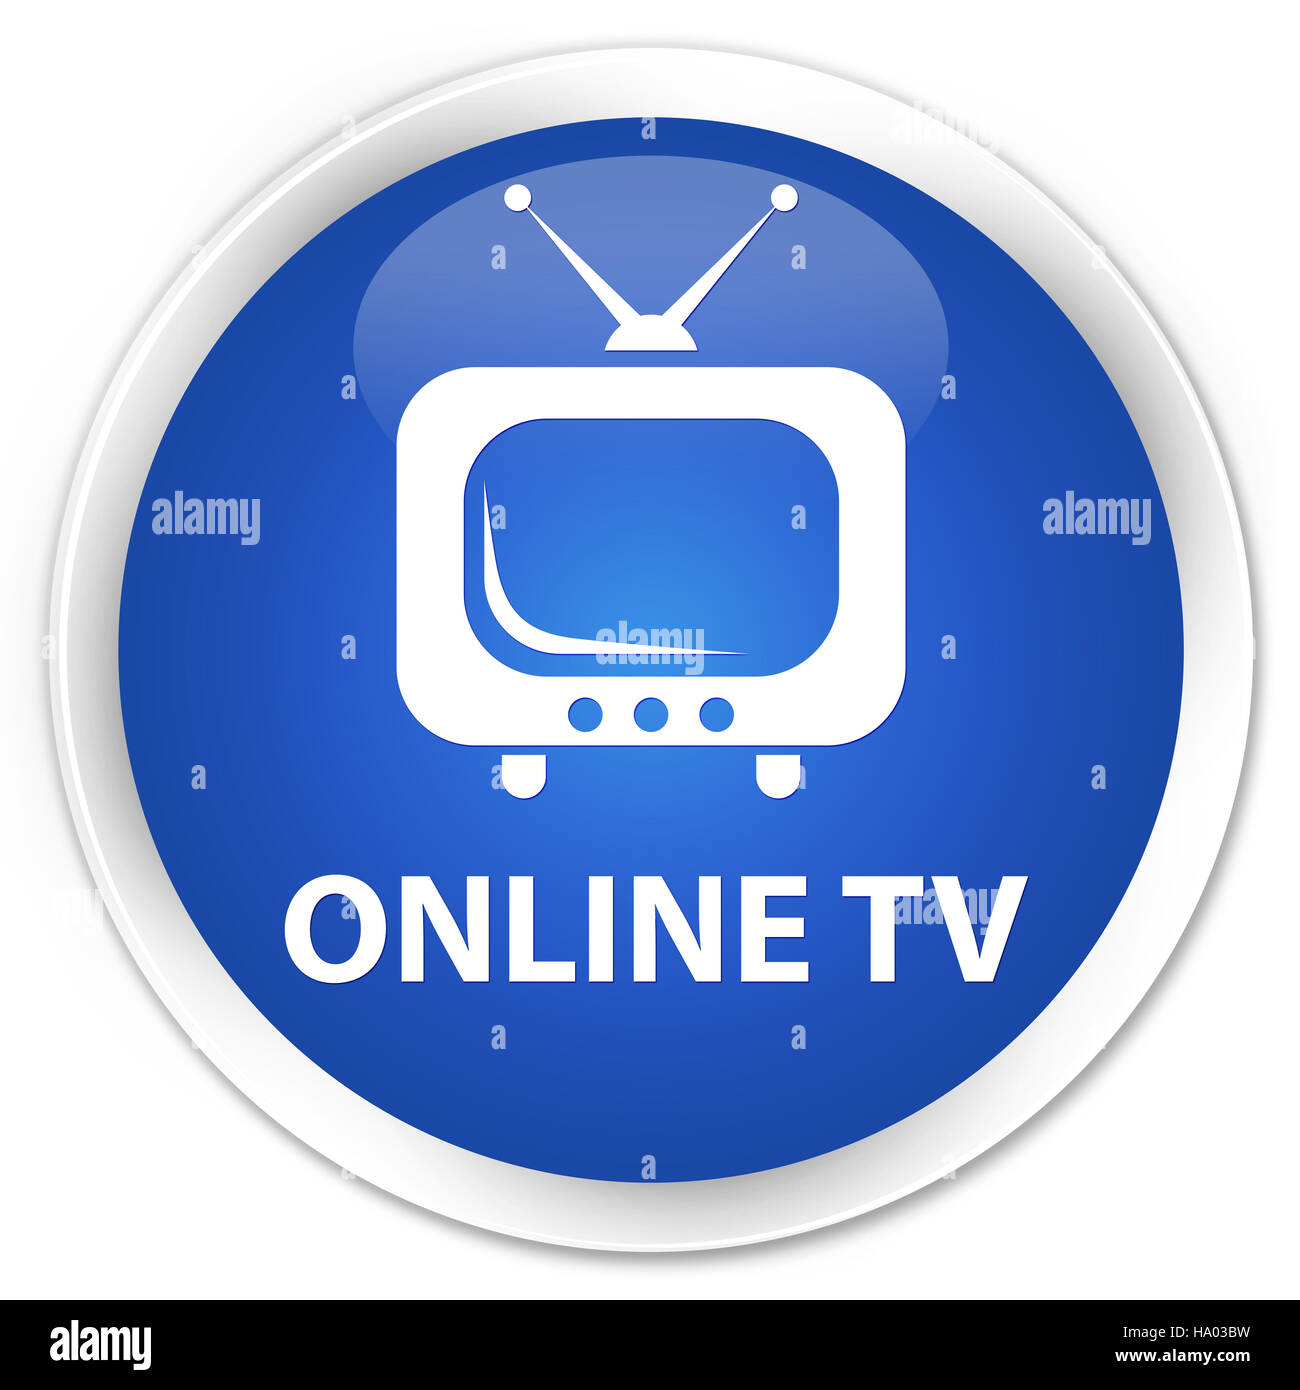 Online-tv isoliert auf Premium-Runde blaue abstrakte Abbildung Stockfoto